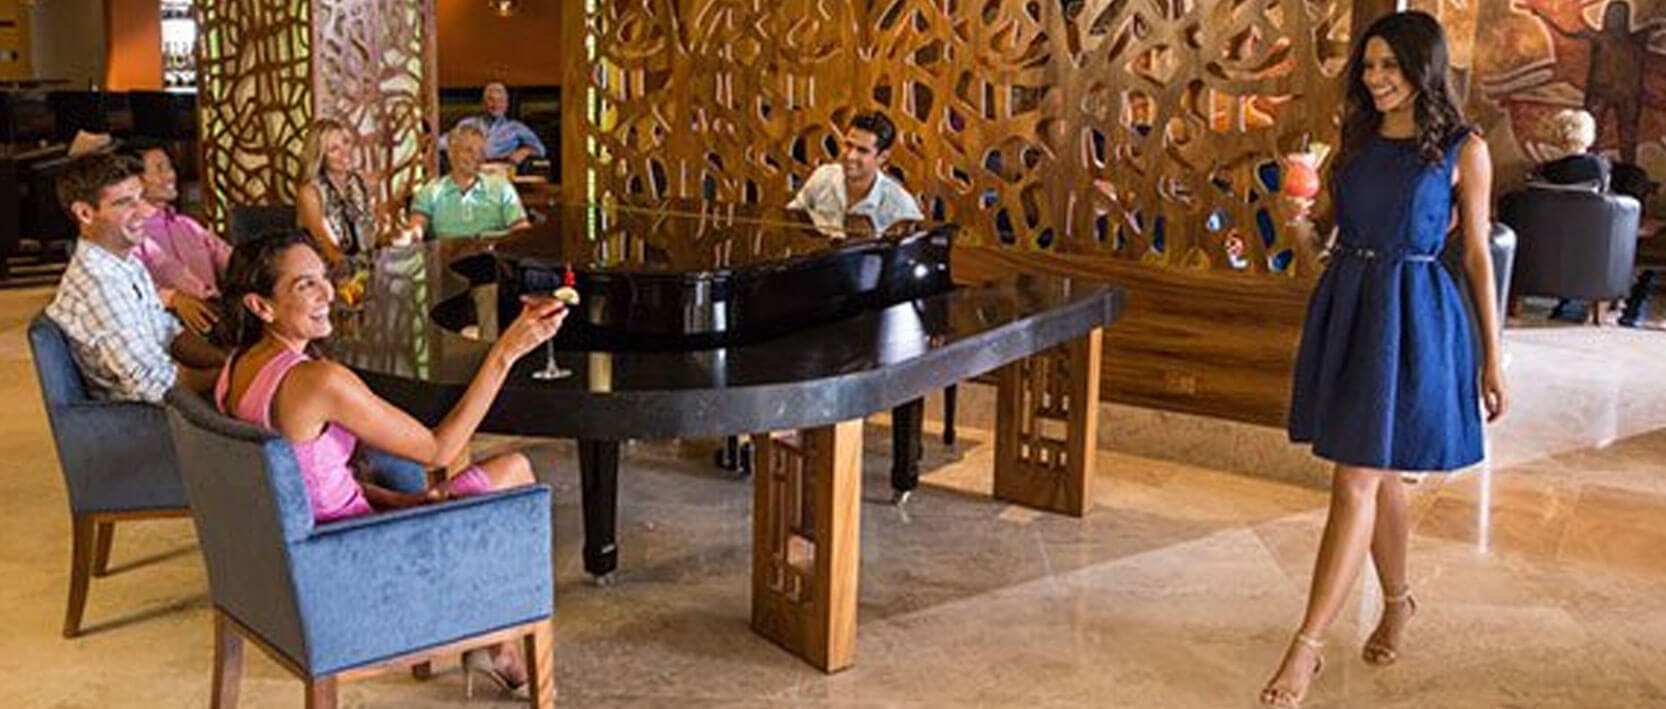 Hyatt Ziva Los Cabos Restaurants and Bars - El Piano Lobby Bar